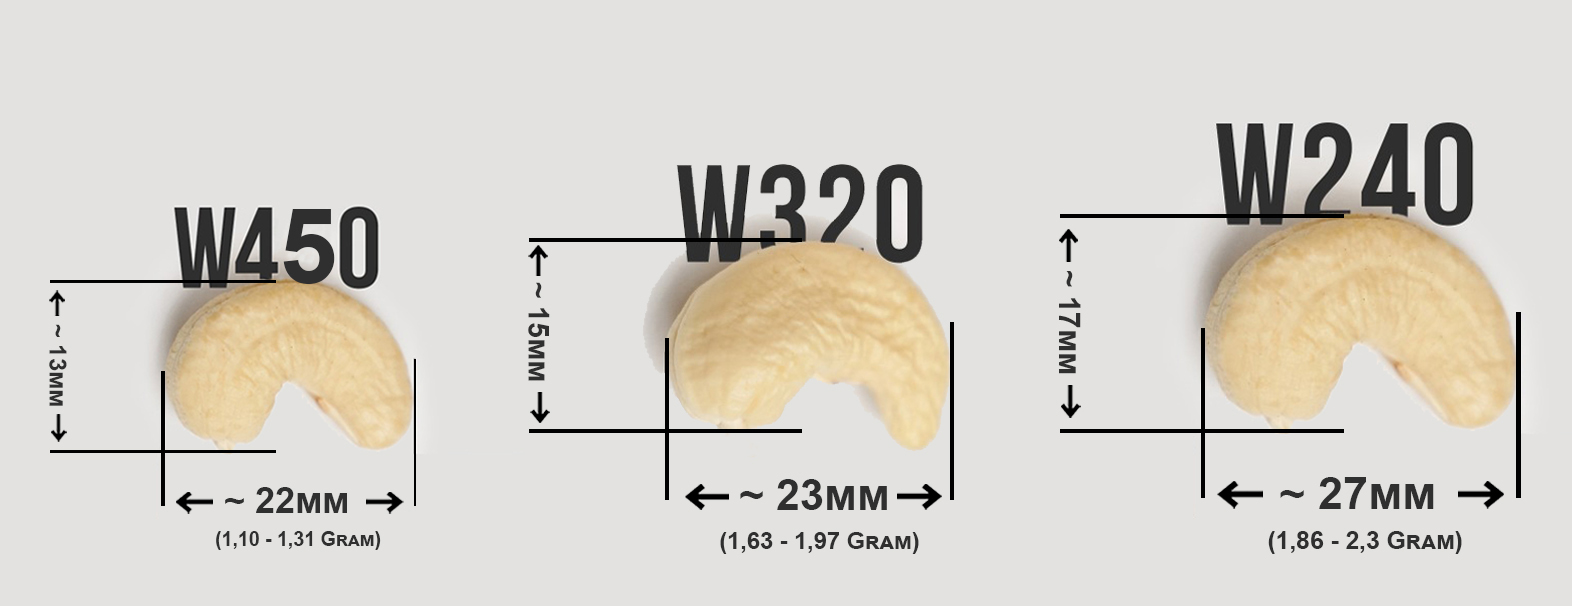 Một số loại hạt điều nguyên hạt thông dụng bao gồm : hạt điều W240, hạt điều W320, hạt điều W450